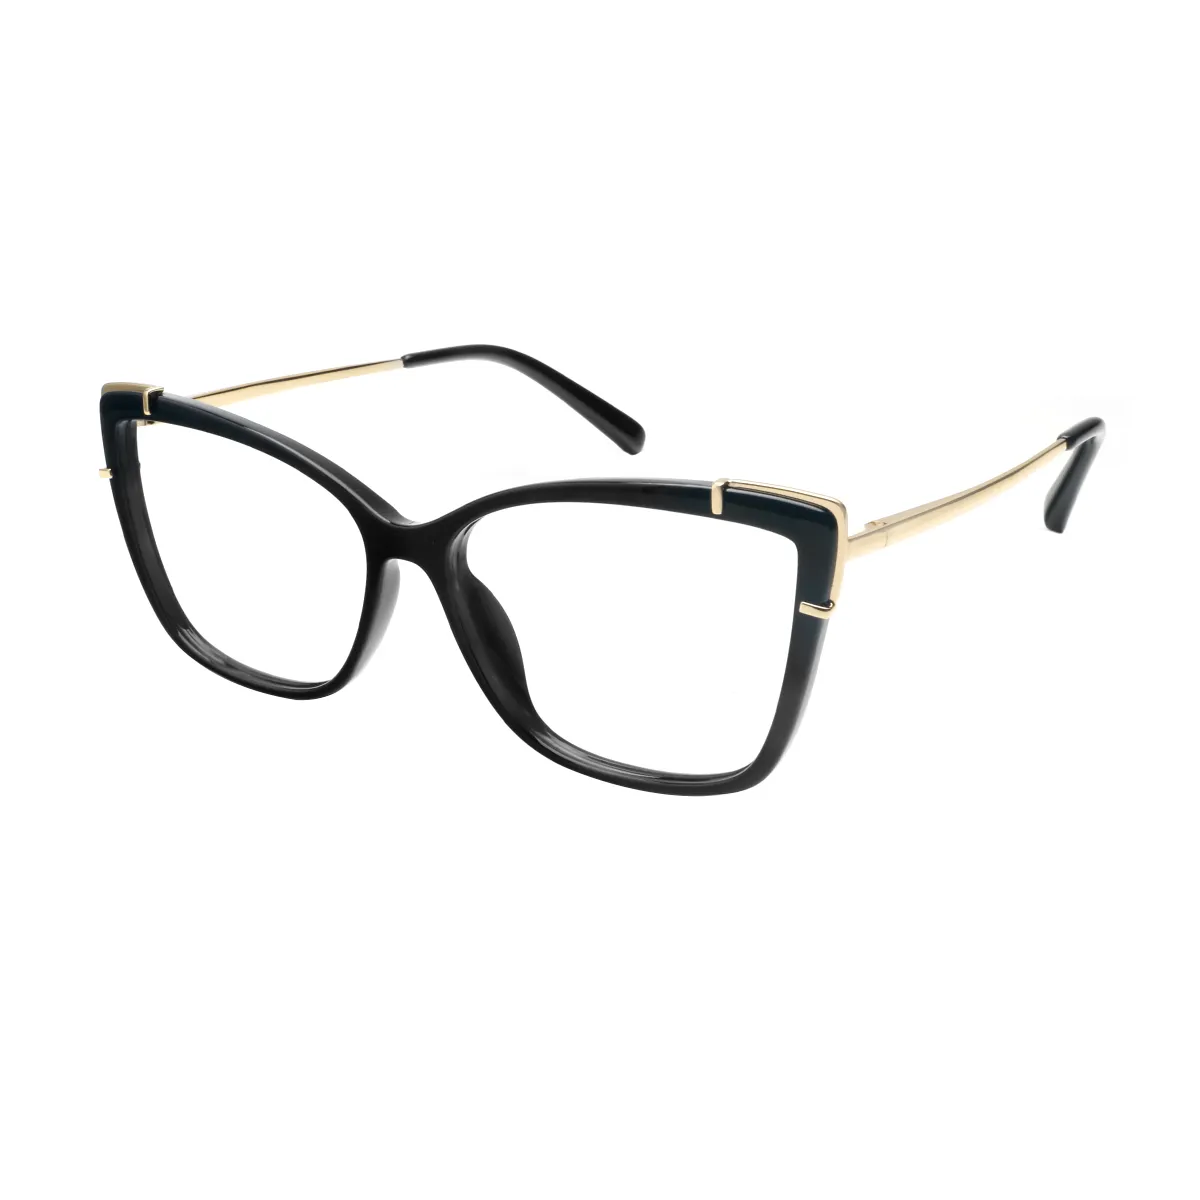 Jayne - Cat-eye Black Glasses for Women